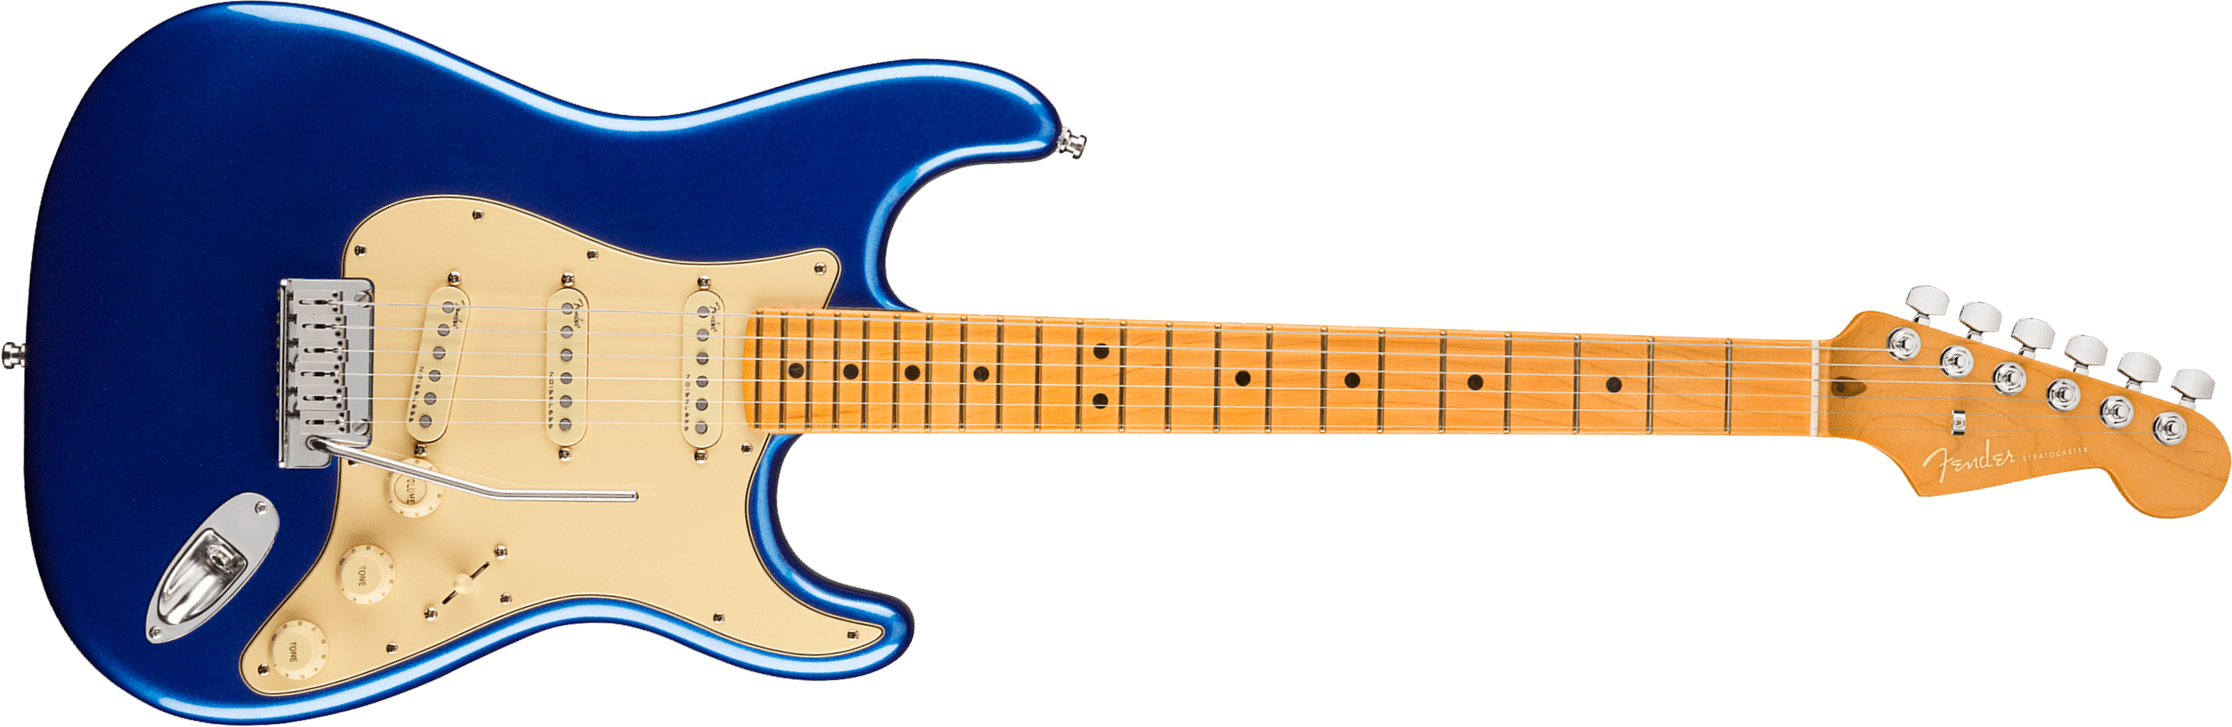 Fender Strat American Ultra 2019 Usa Mn - Cobra Blue - Elektrische gitaar in Str-vorm - Main picture